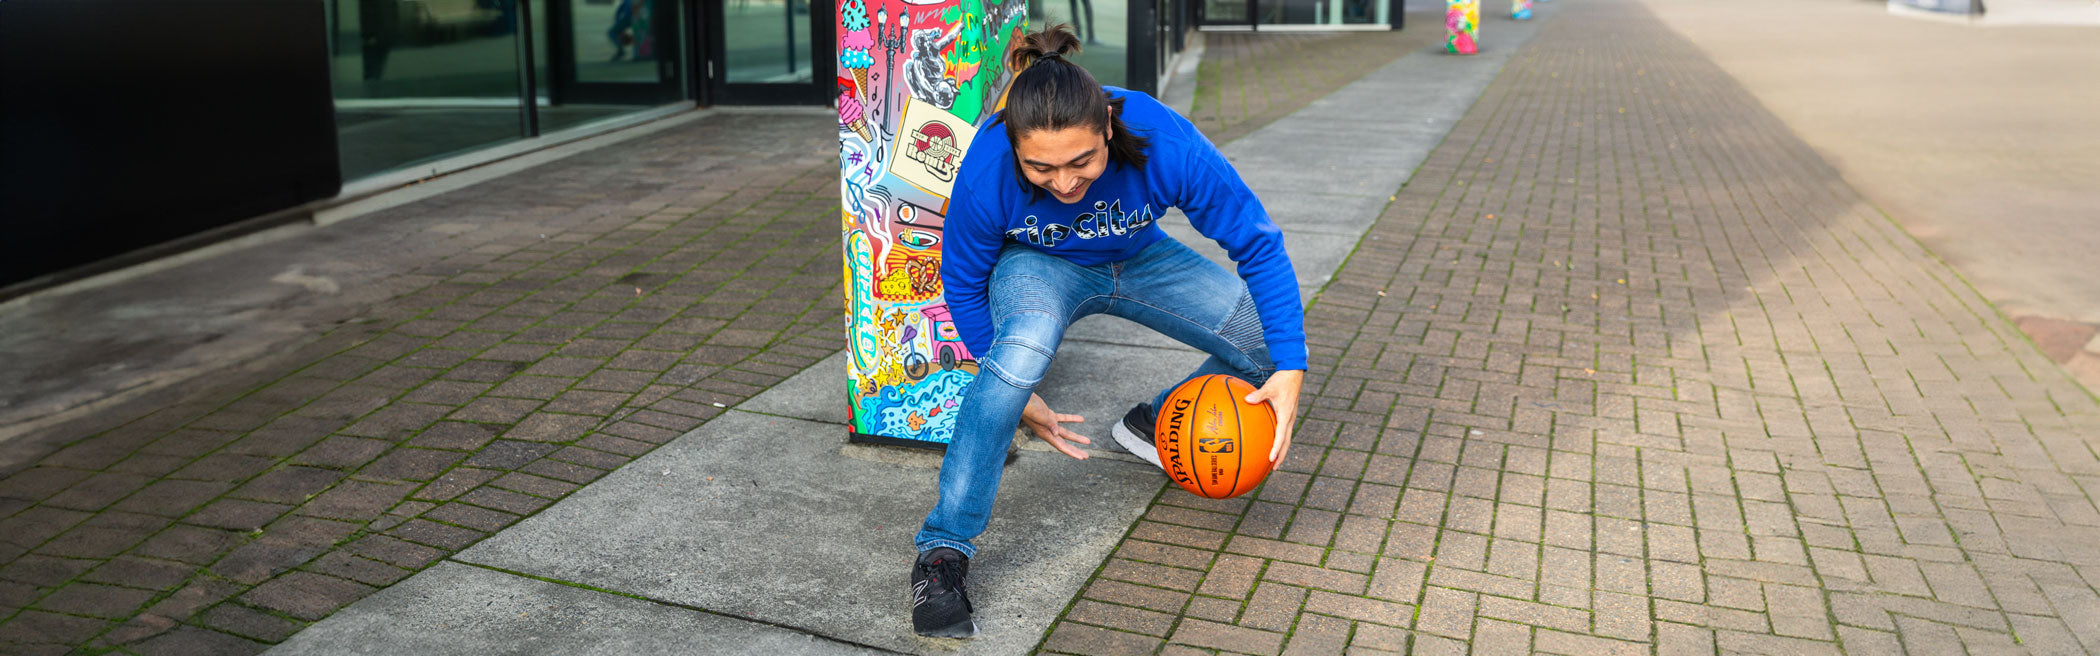 Man playing basketball on sidewalk